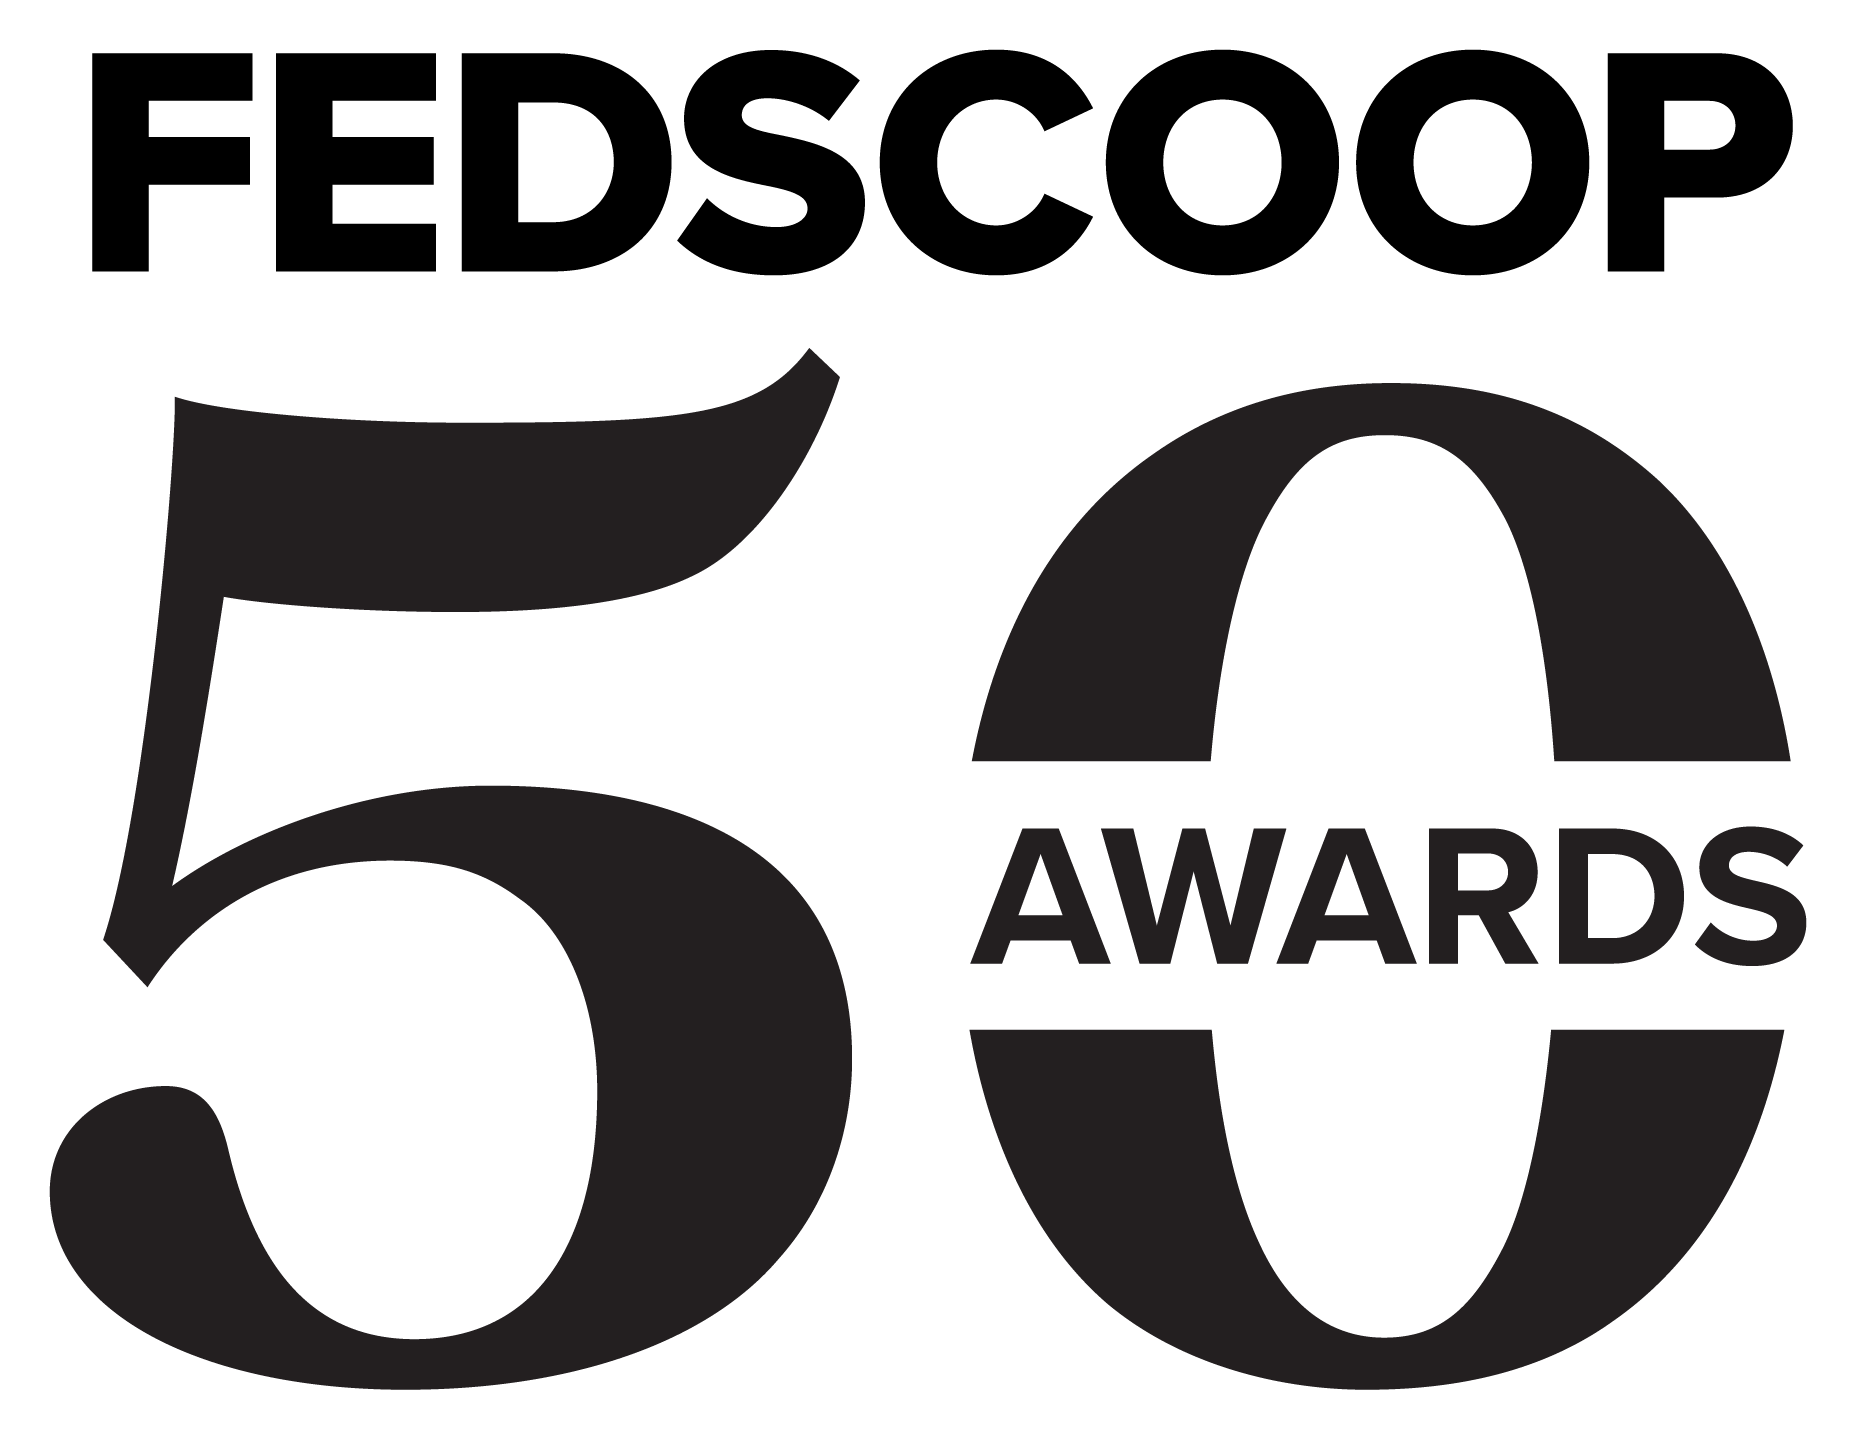 FedScoop 50 Awards